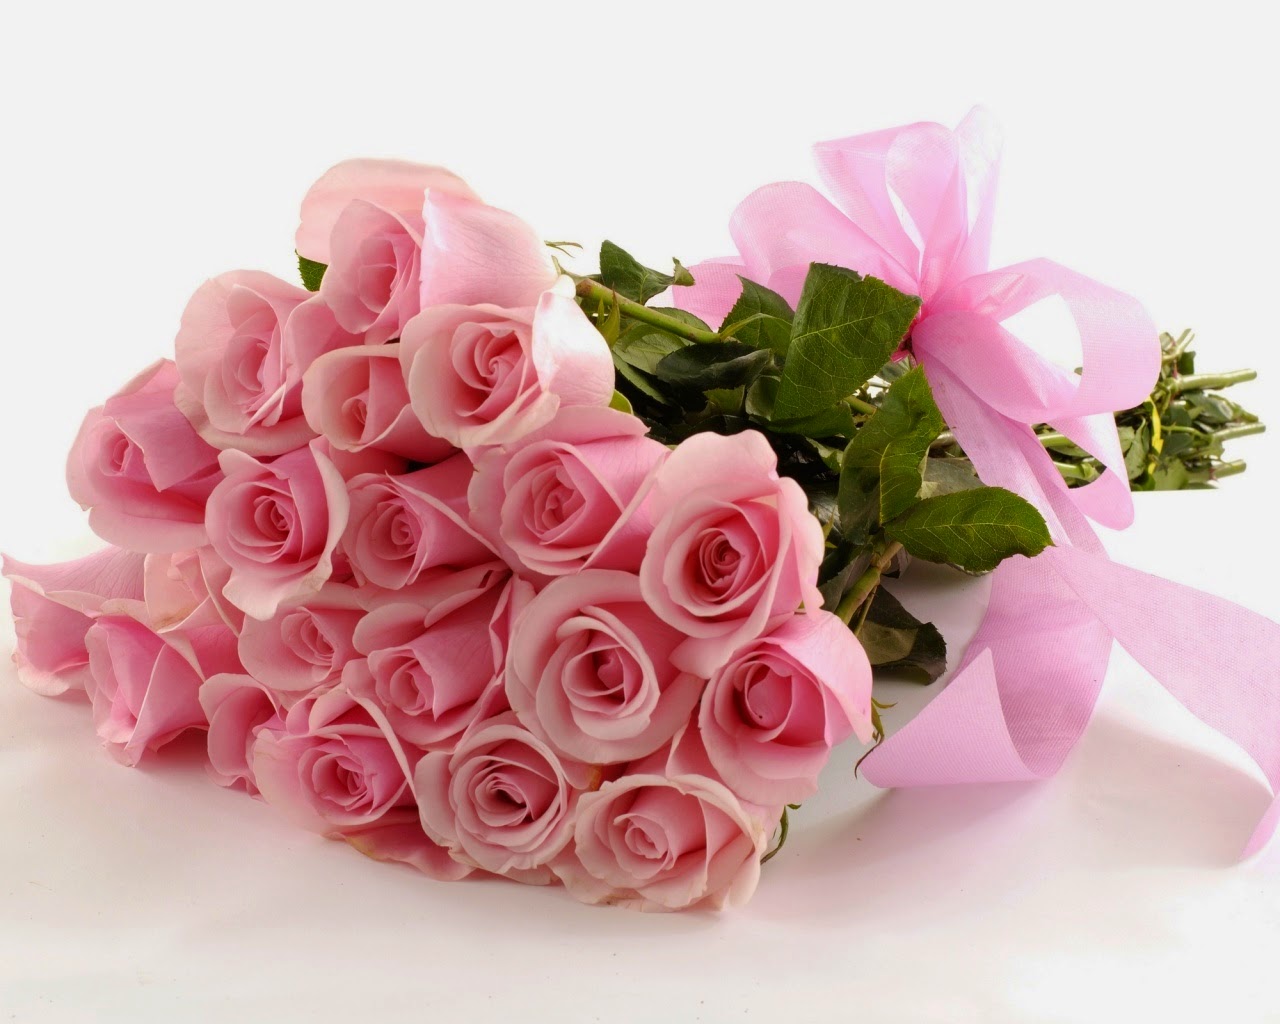 Hoa hồng phấn là món quà ý nghĩa dành tặng những cô nàng dịu dáng, thùy mị